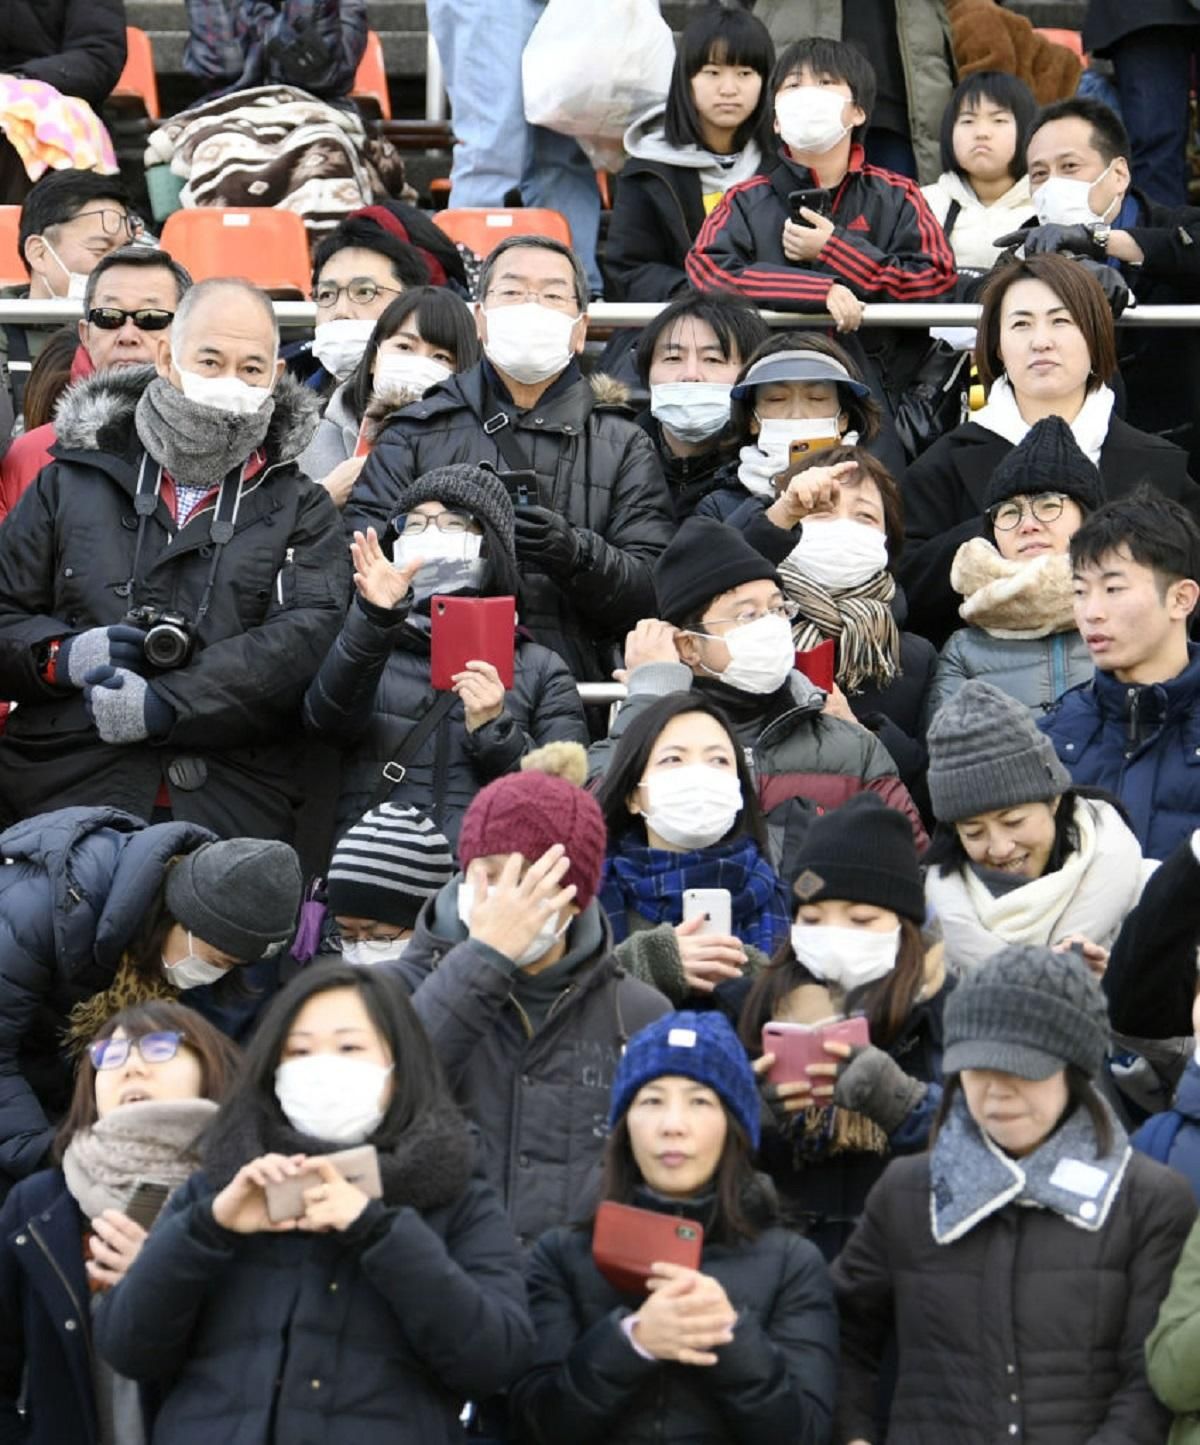 Китай проведе день жалоби за загиблими через коронавірус